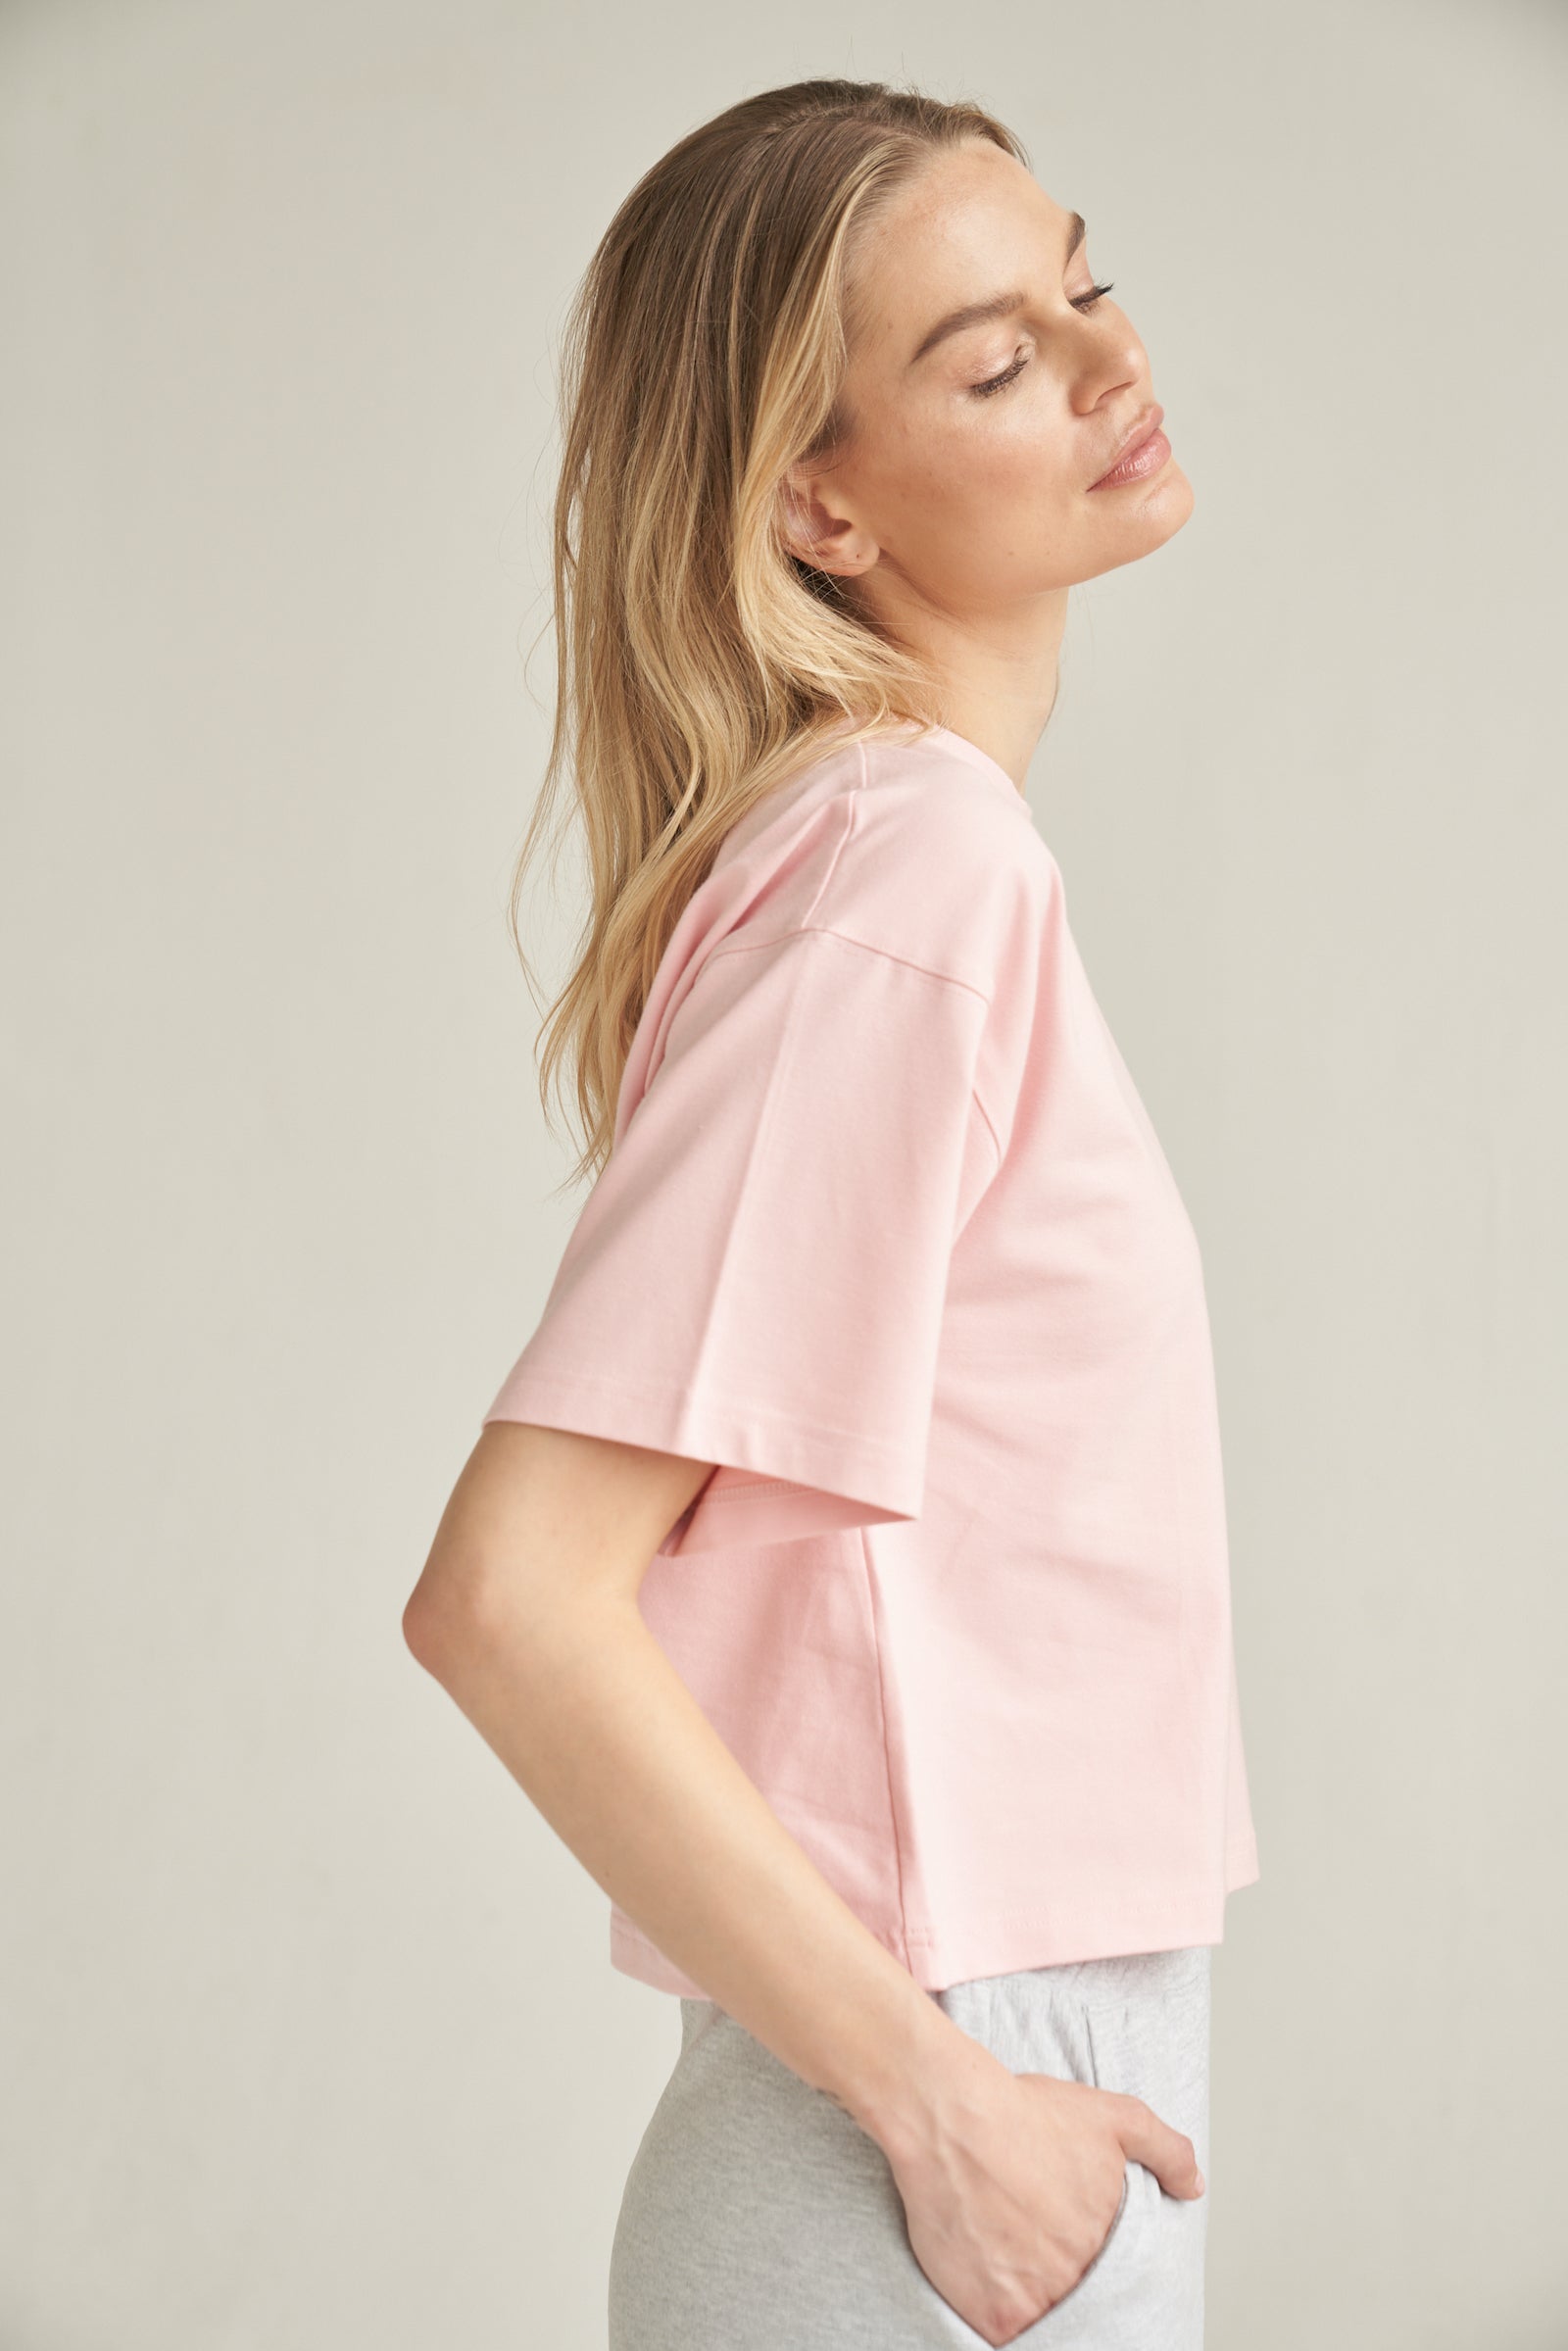 Unser T-Shirt aus Bio-Baumwolle in der Farbe rosa von der Marke Bellasor wird von einem blonden Model getragen. Sie steht vor einem hellen Hintergrund und zeigt das T-Shirt von der rechten Seite. Ihre rechte Hand steckt in der Tasche einer hellgrauen Short von Bellasor.